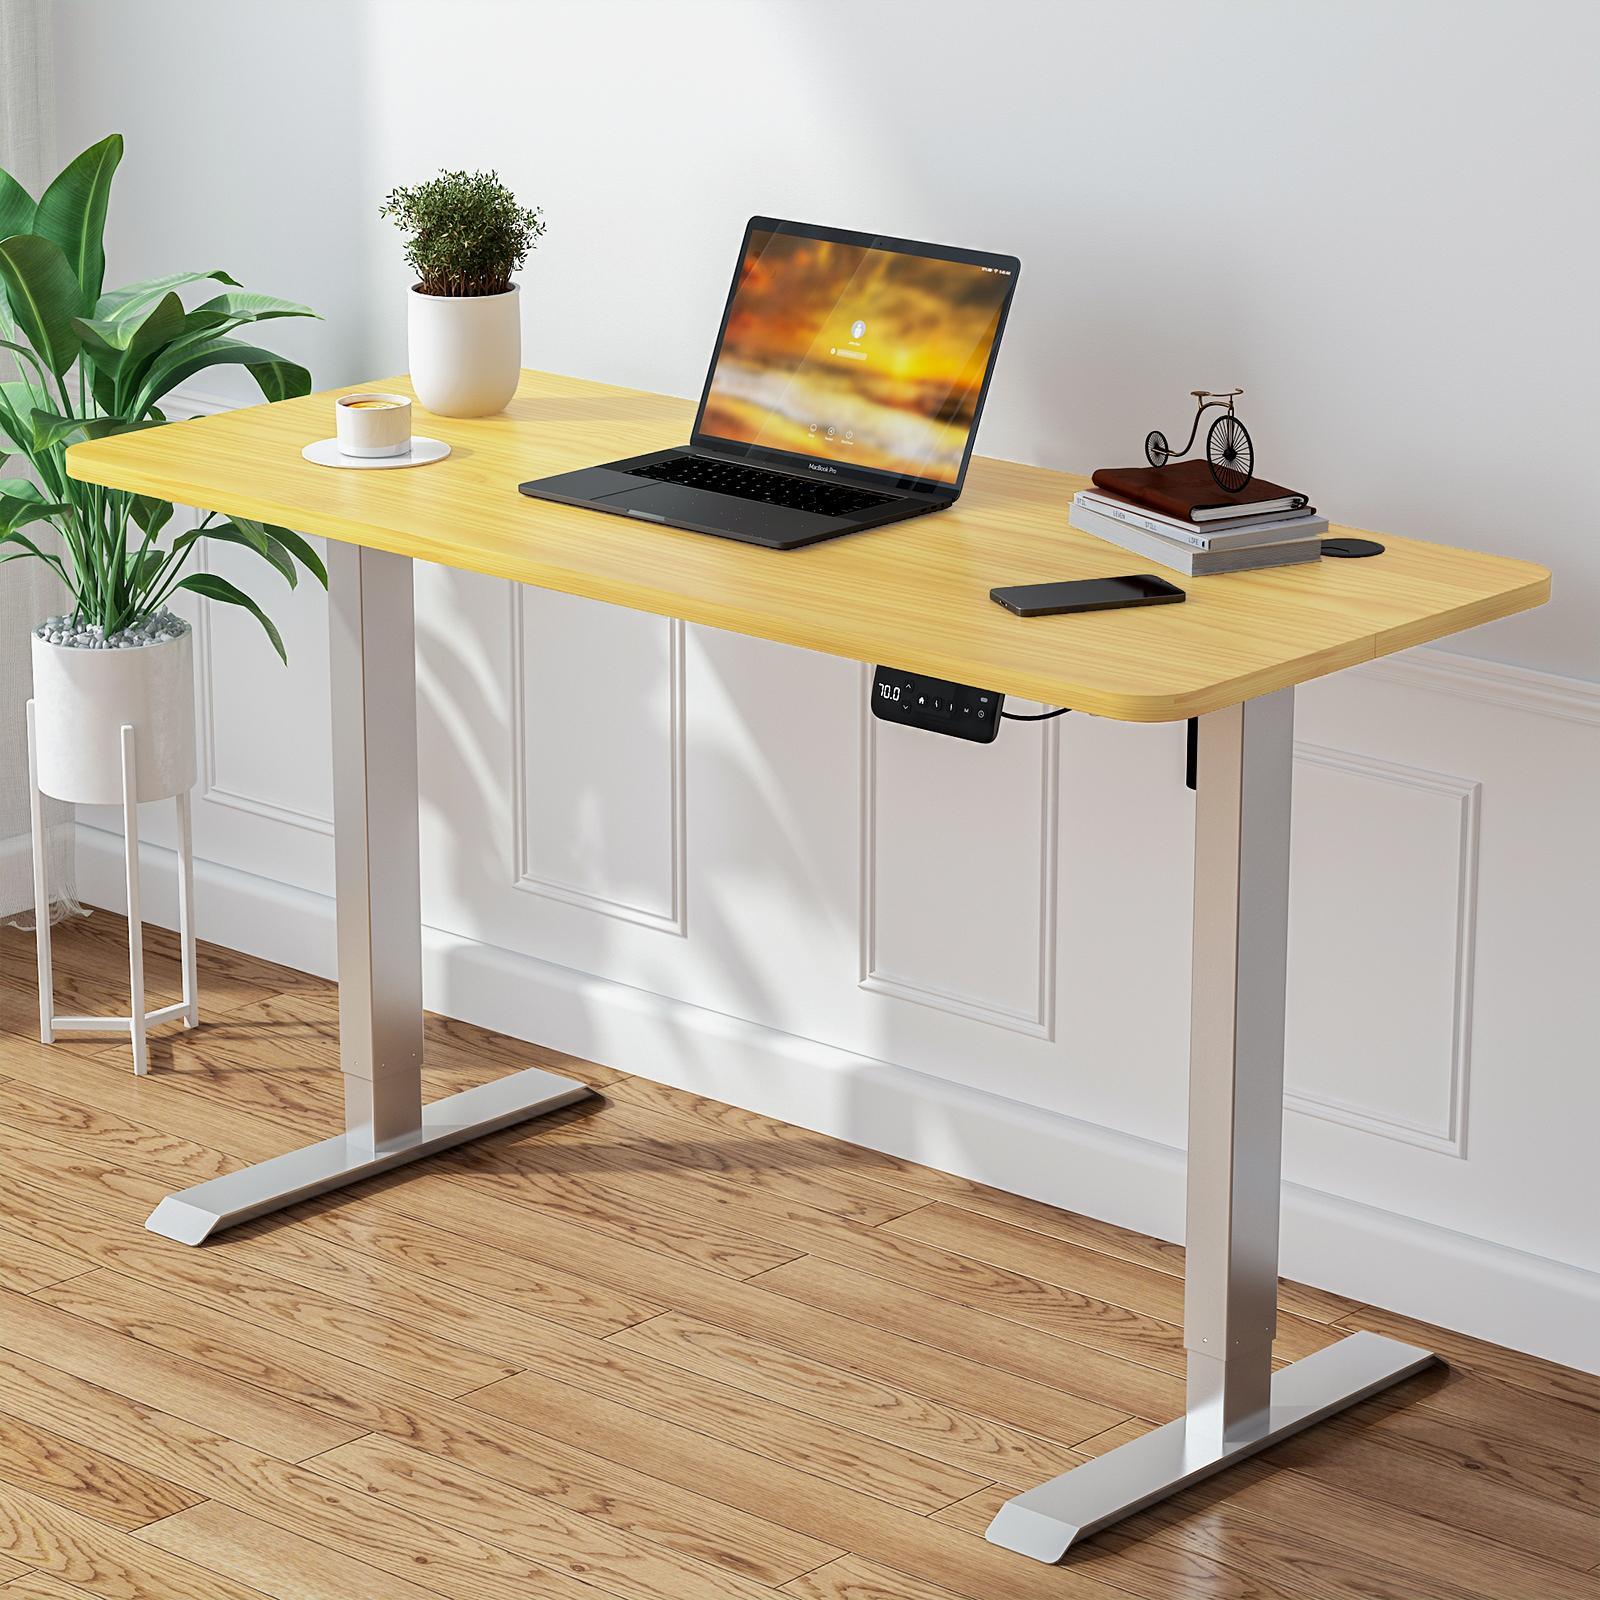 Advwin Electric Standing Desk 120cm Oak Color